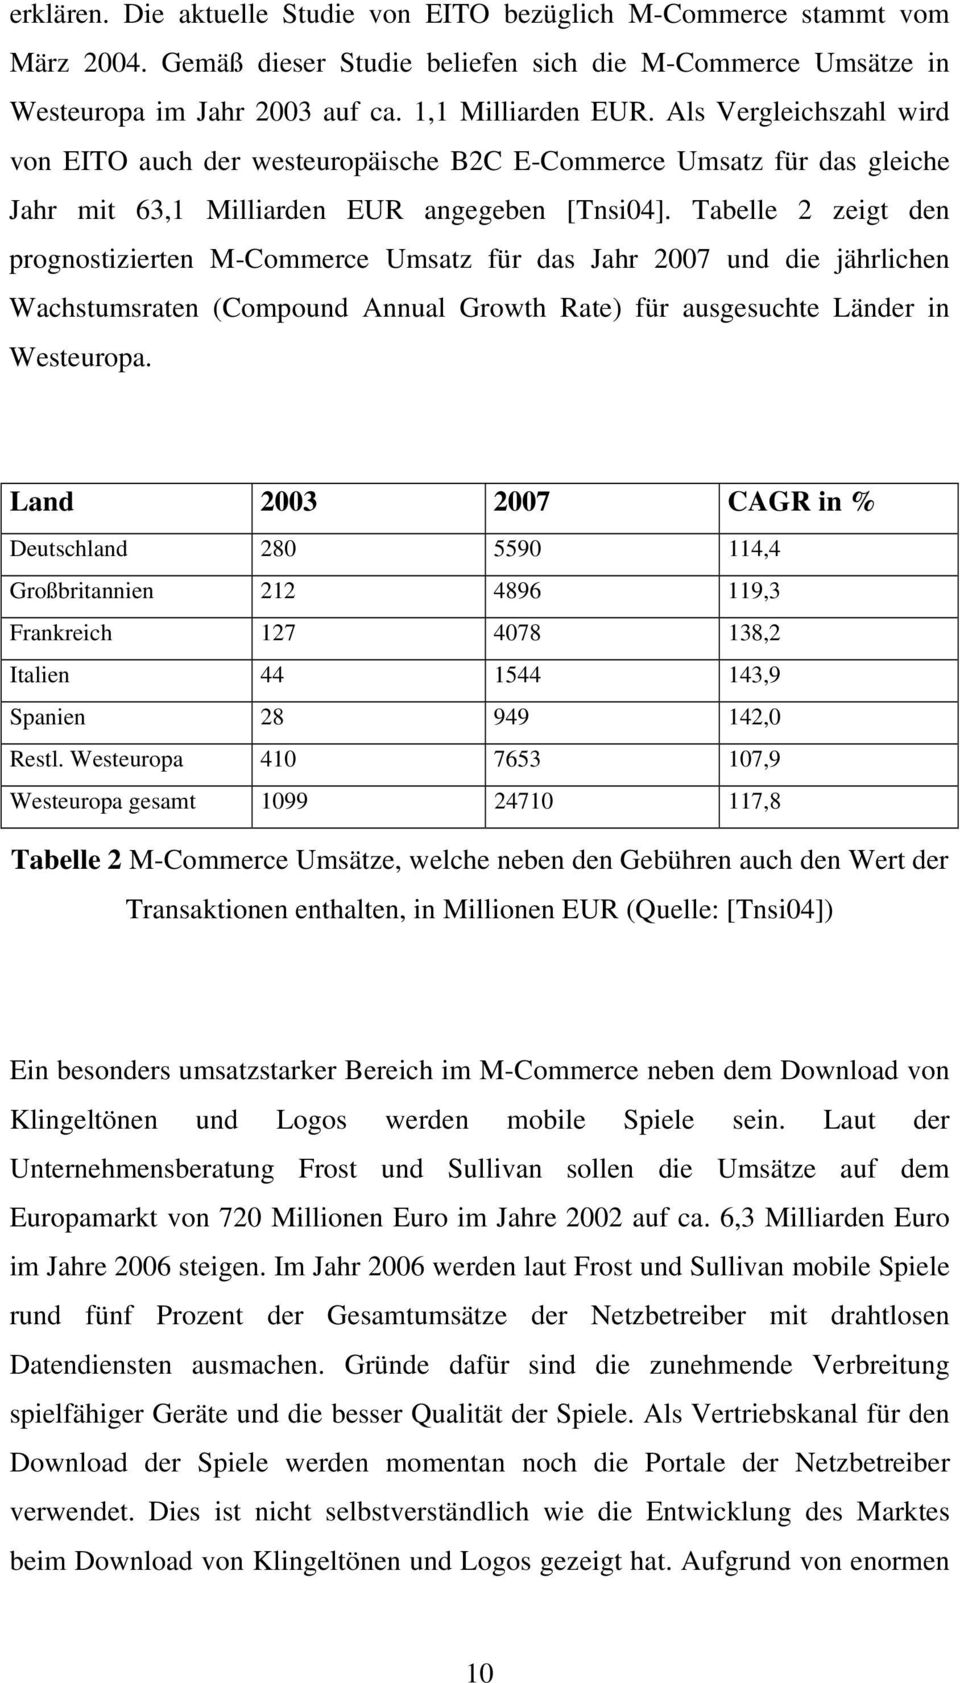 Tabelle 2 zeigt den prognostizierten M-Commerce Umsatz für das Jahr 2007 und die jährlichen Wachstumsraten (Compound Annual Growth Rate) für ausgesuchte Länder in Westeuropa.